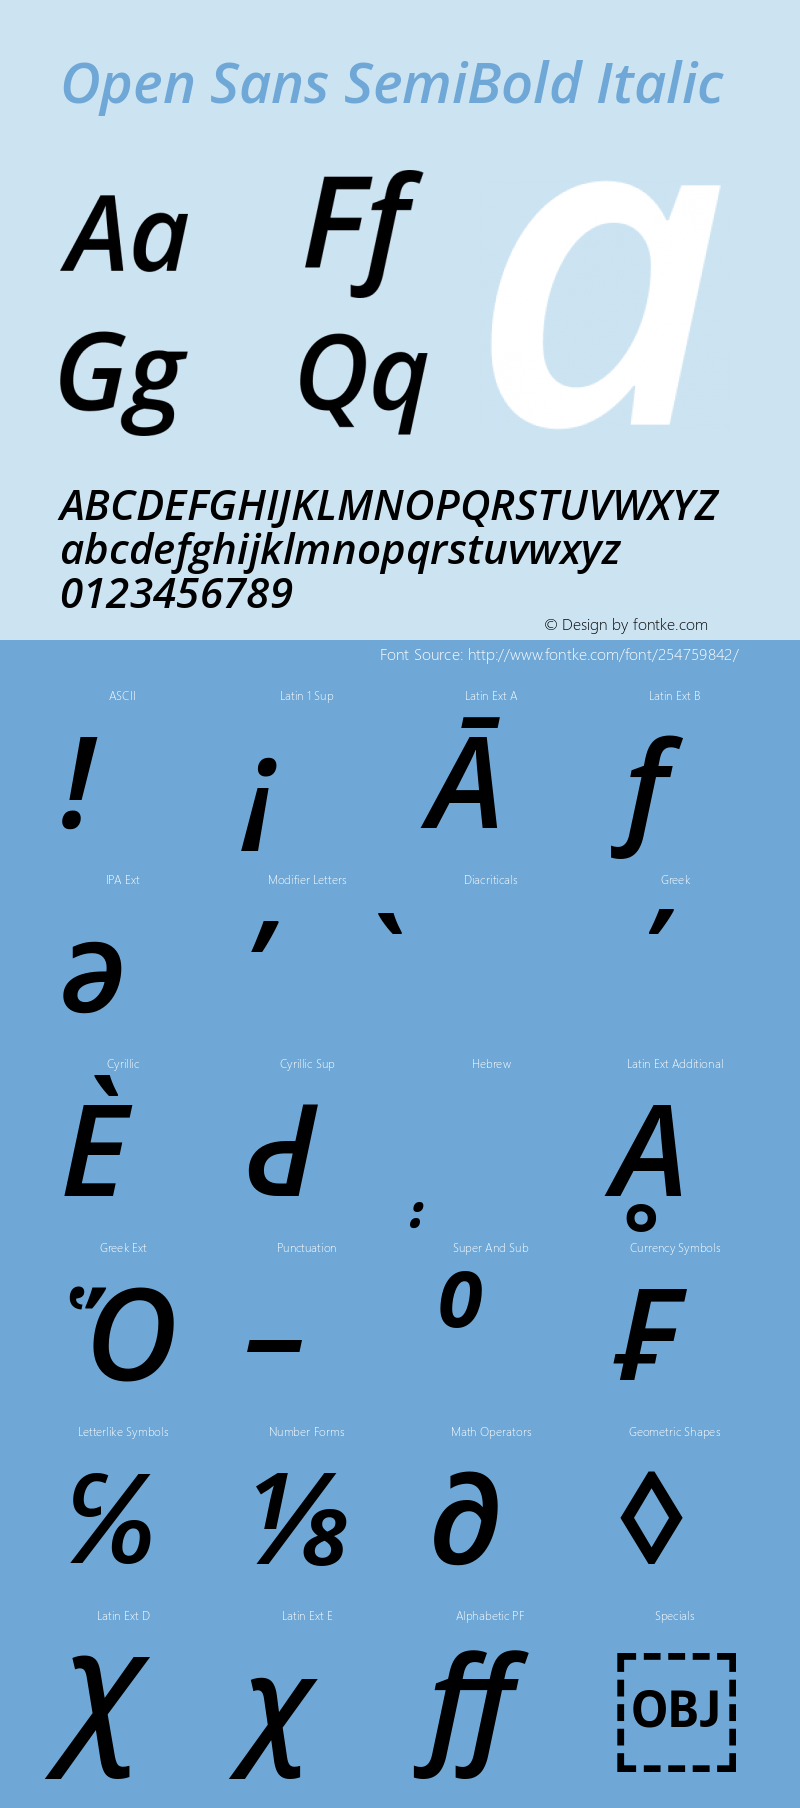 Open Sans SemiBold Italic Version 3.003图片样张